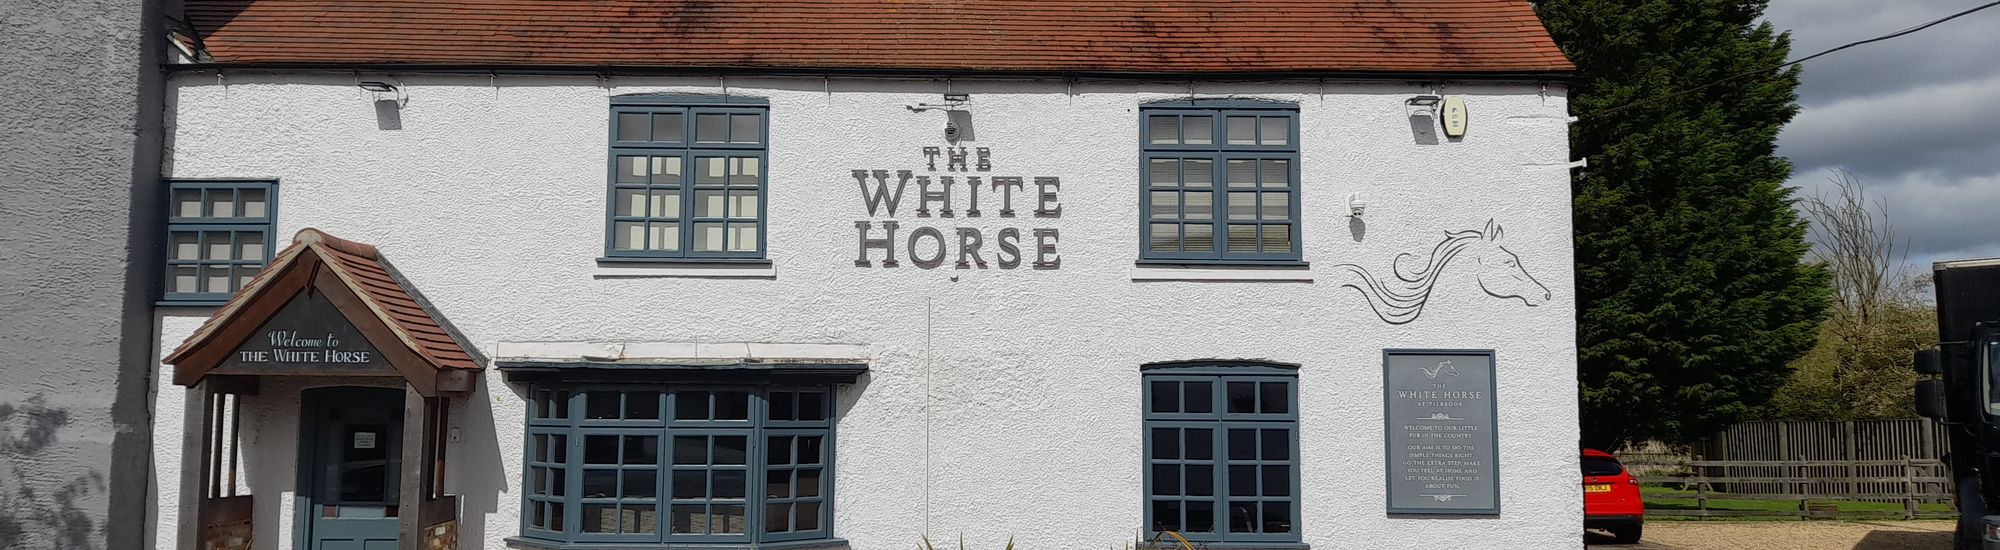 The White Horse, Tilbrook